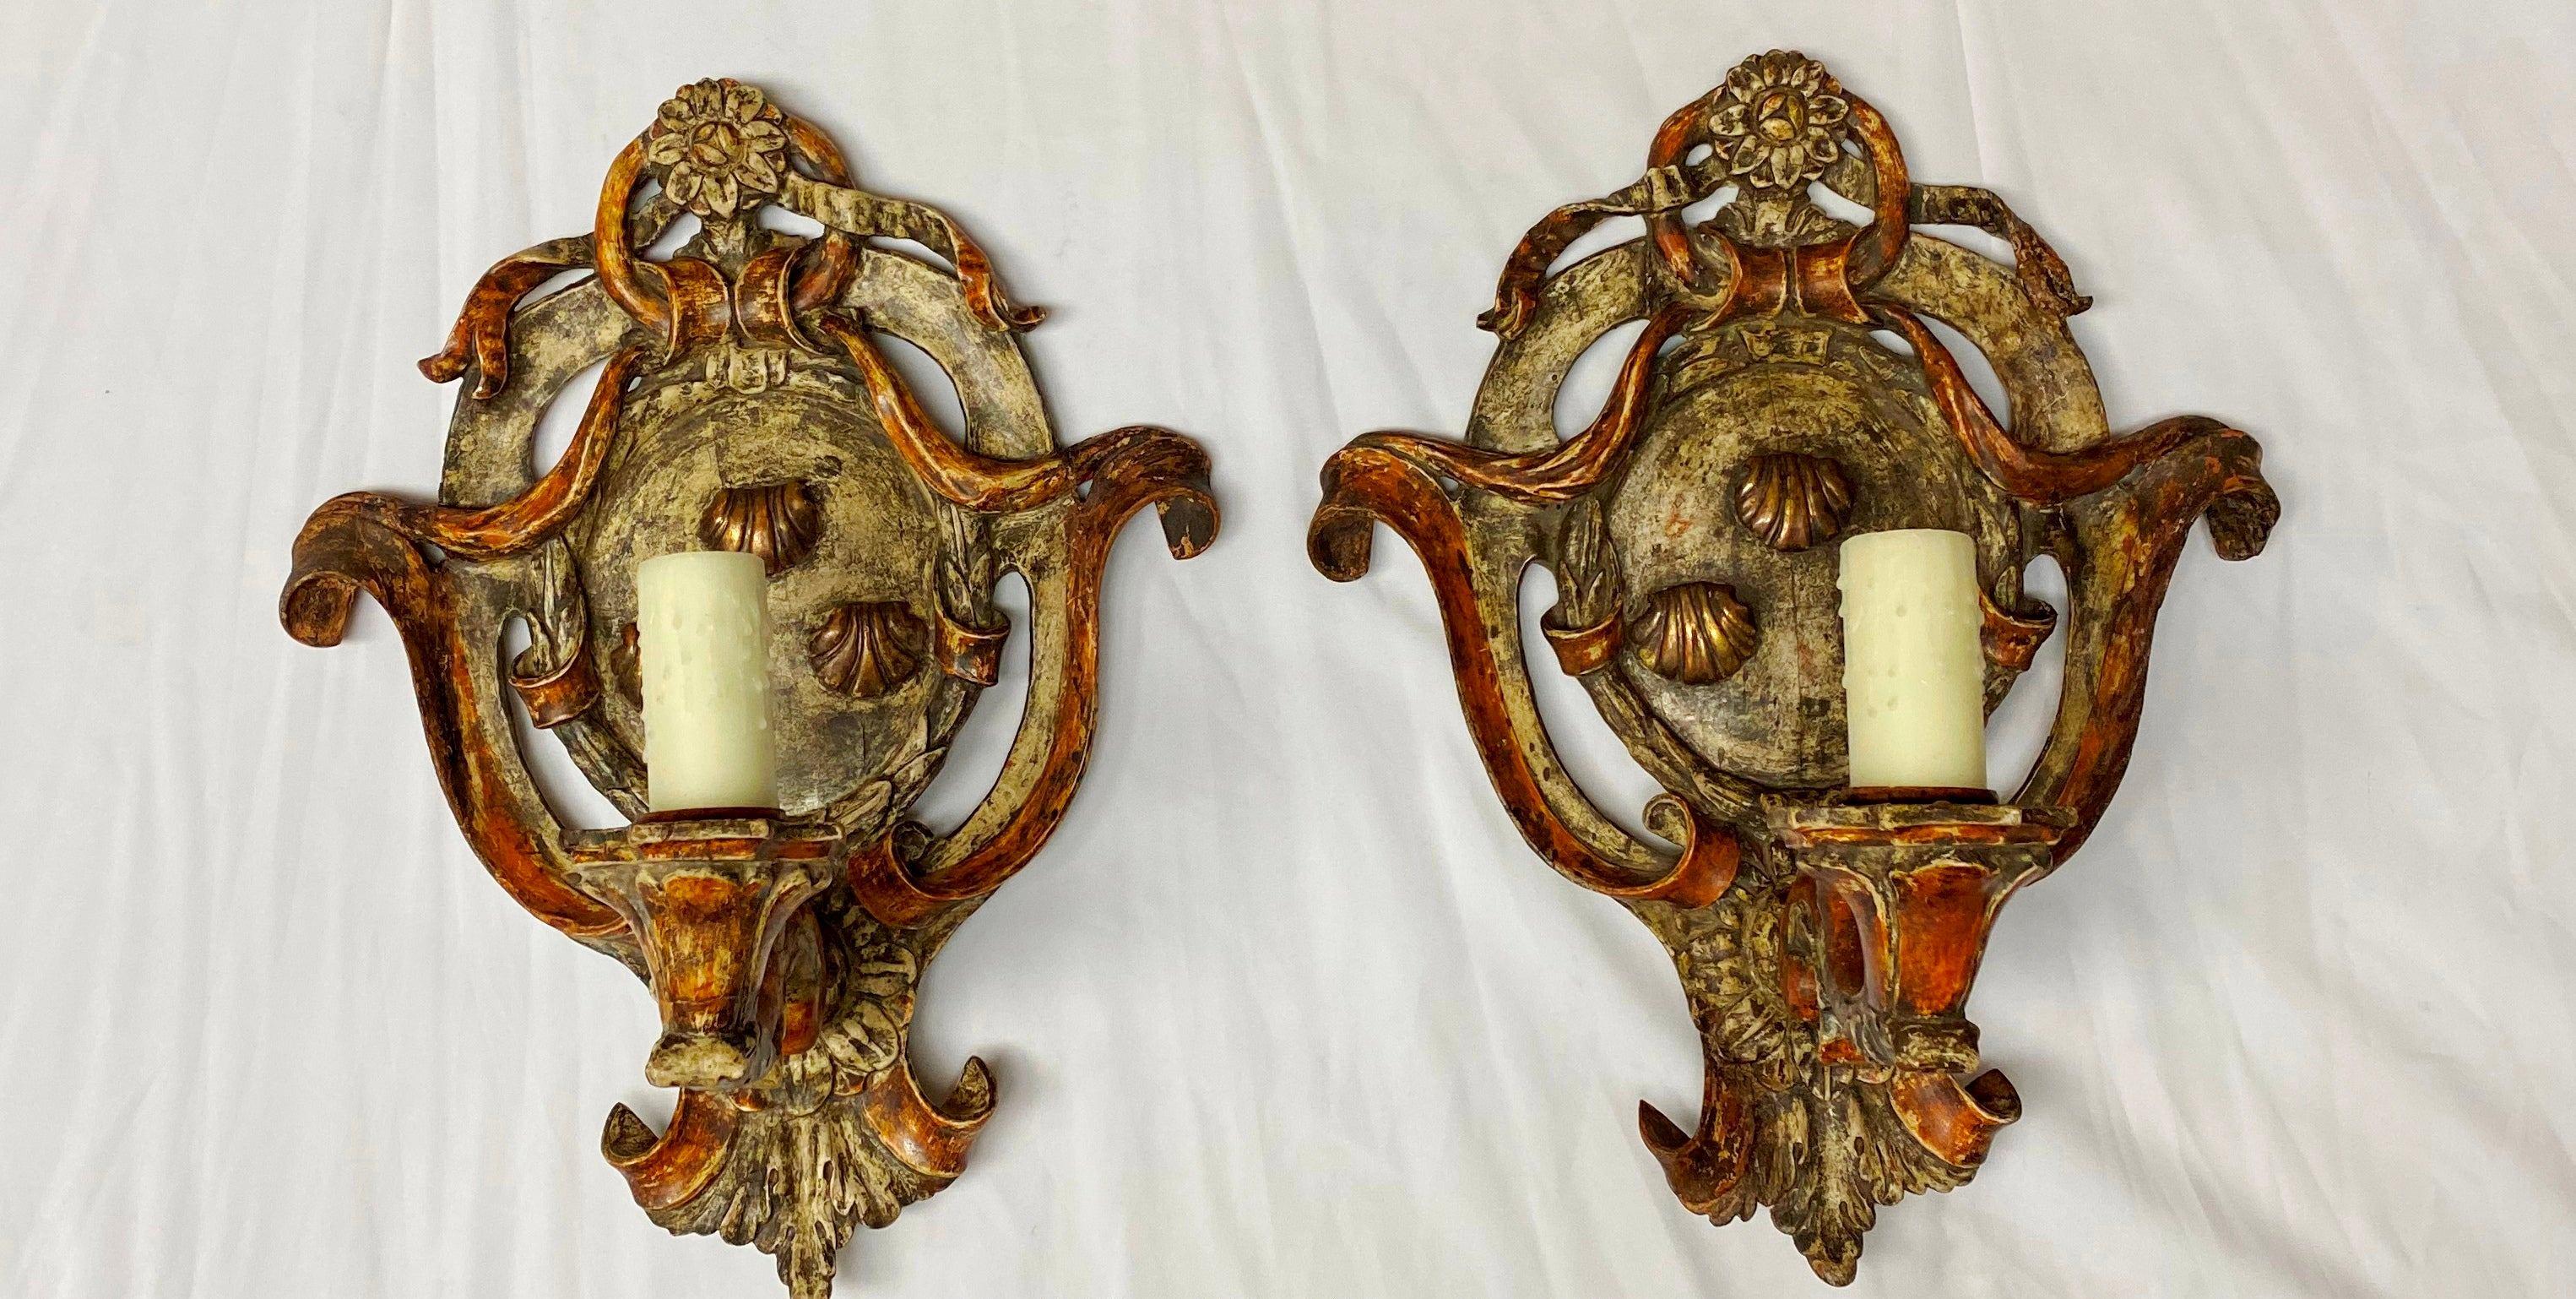 Paire d'appliques en bois sculpté peint de style baroque italien, 19e siècle. 
Chacune d'entre elles est surmontée d'une rosette au-dessus d'un cartouche rubané peint à la main et doré à la feuille, et d'un bras de bougie sculpté à la main et